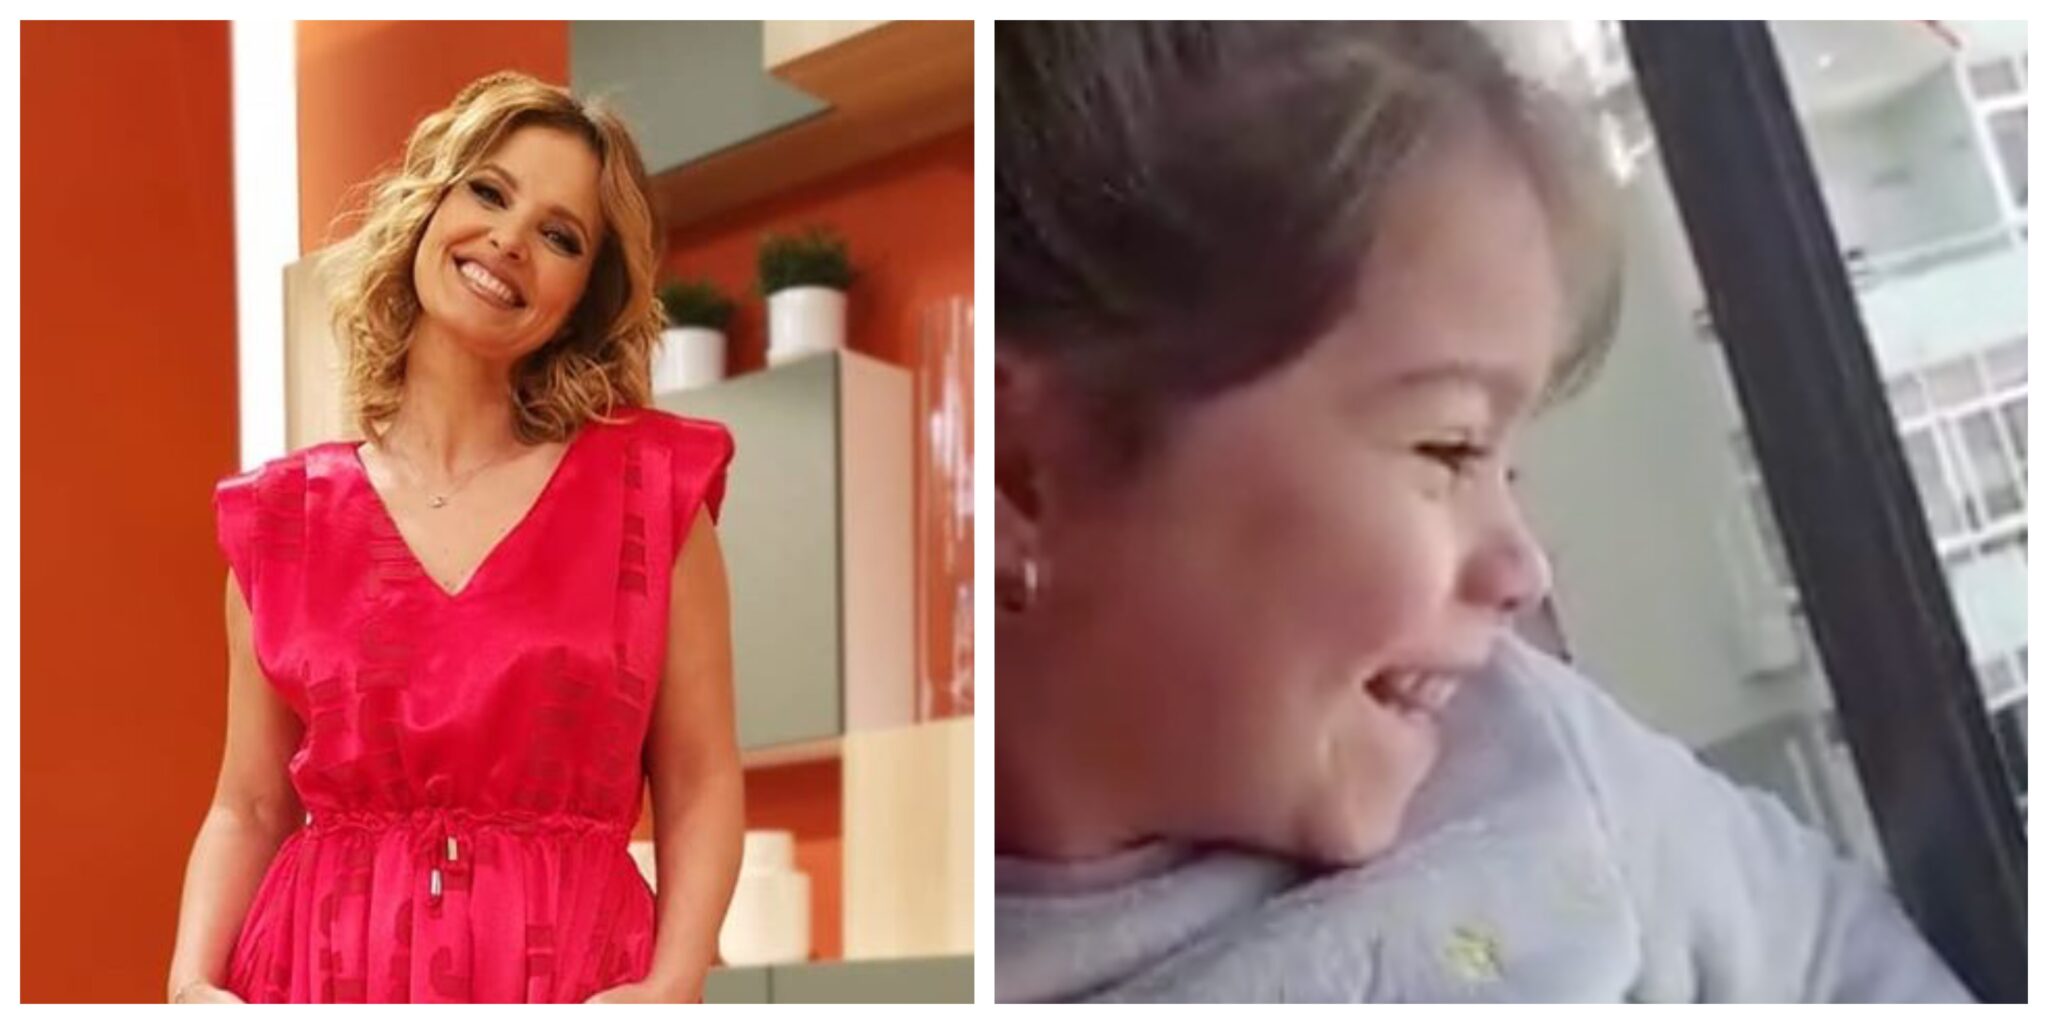 Cristina ferreira crianca scaled Cristina Ferreira emociona-se com vídeo: "Este pai não pode estar com a sua filha..."